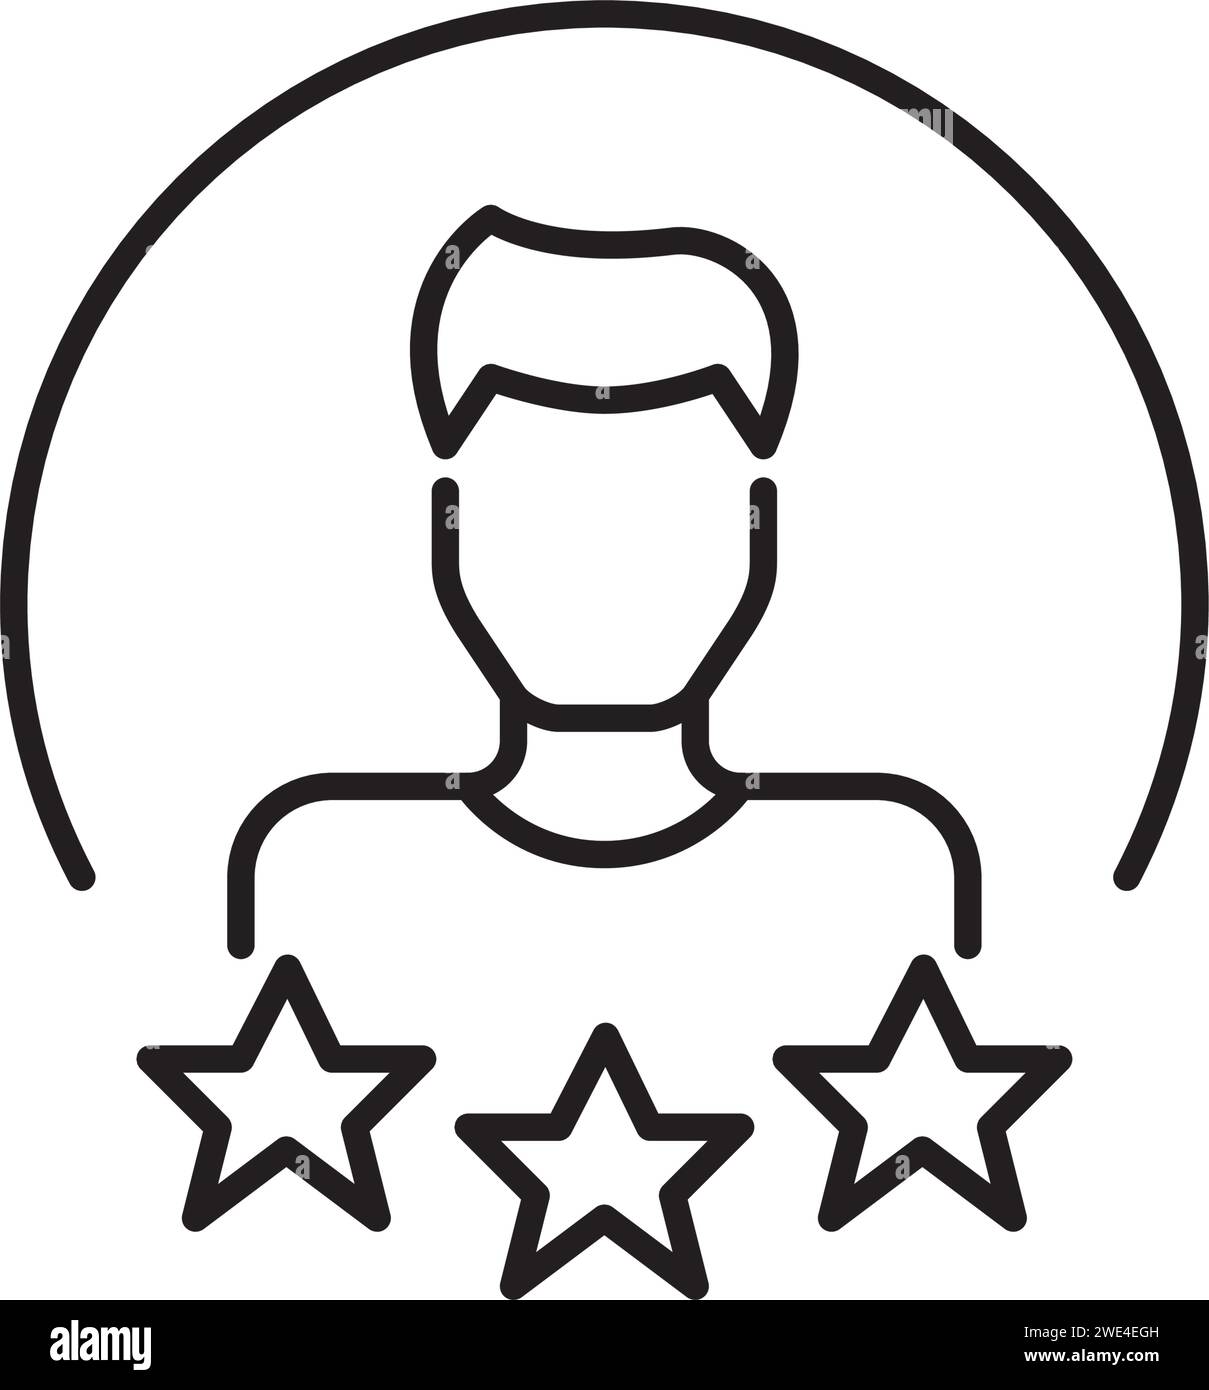 Valutazione a stelle da parte dell'utente. Uomo con i capelli corti. Icona Pixel Perfect Illustrazione Vettoriale